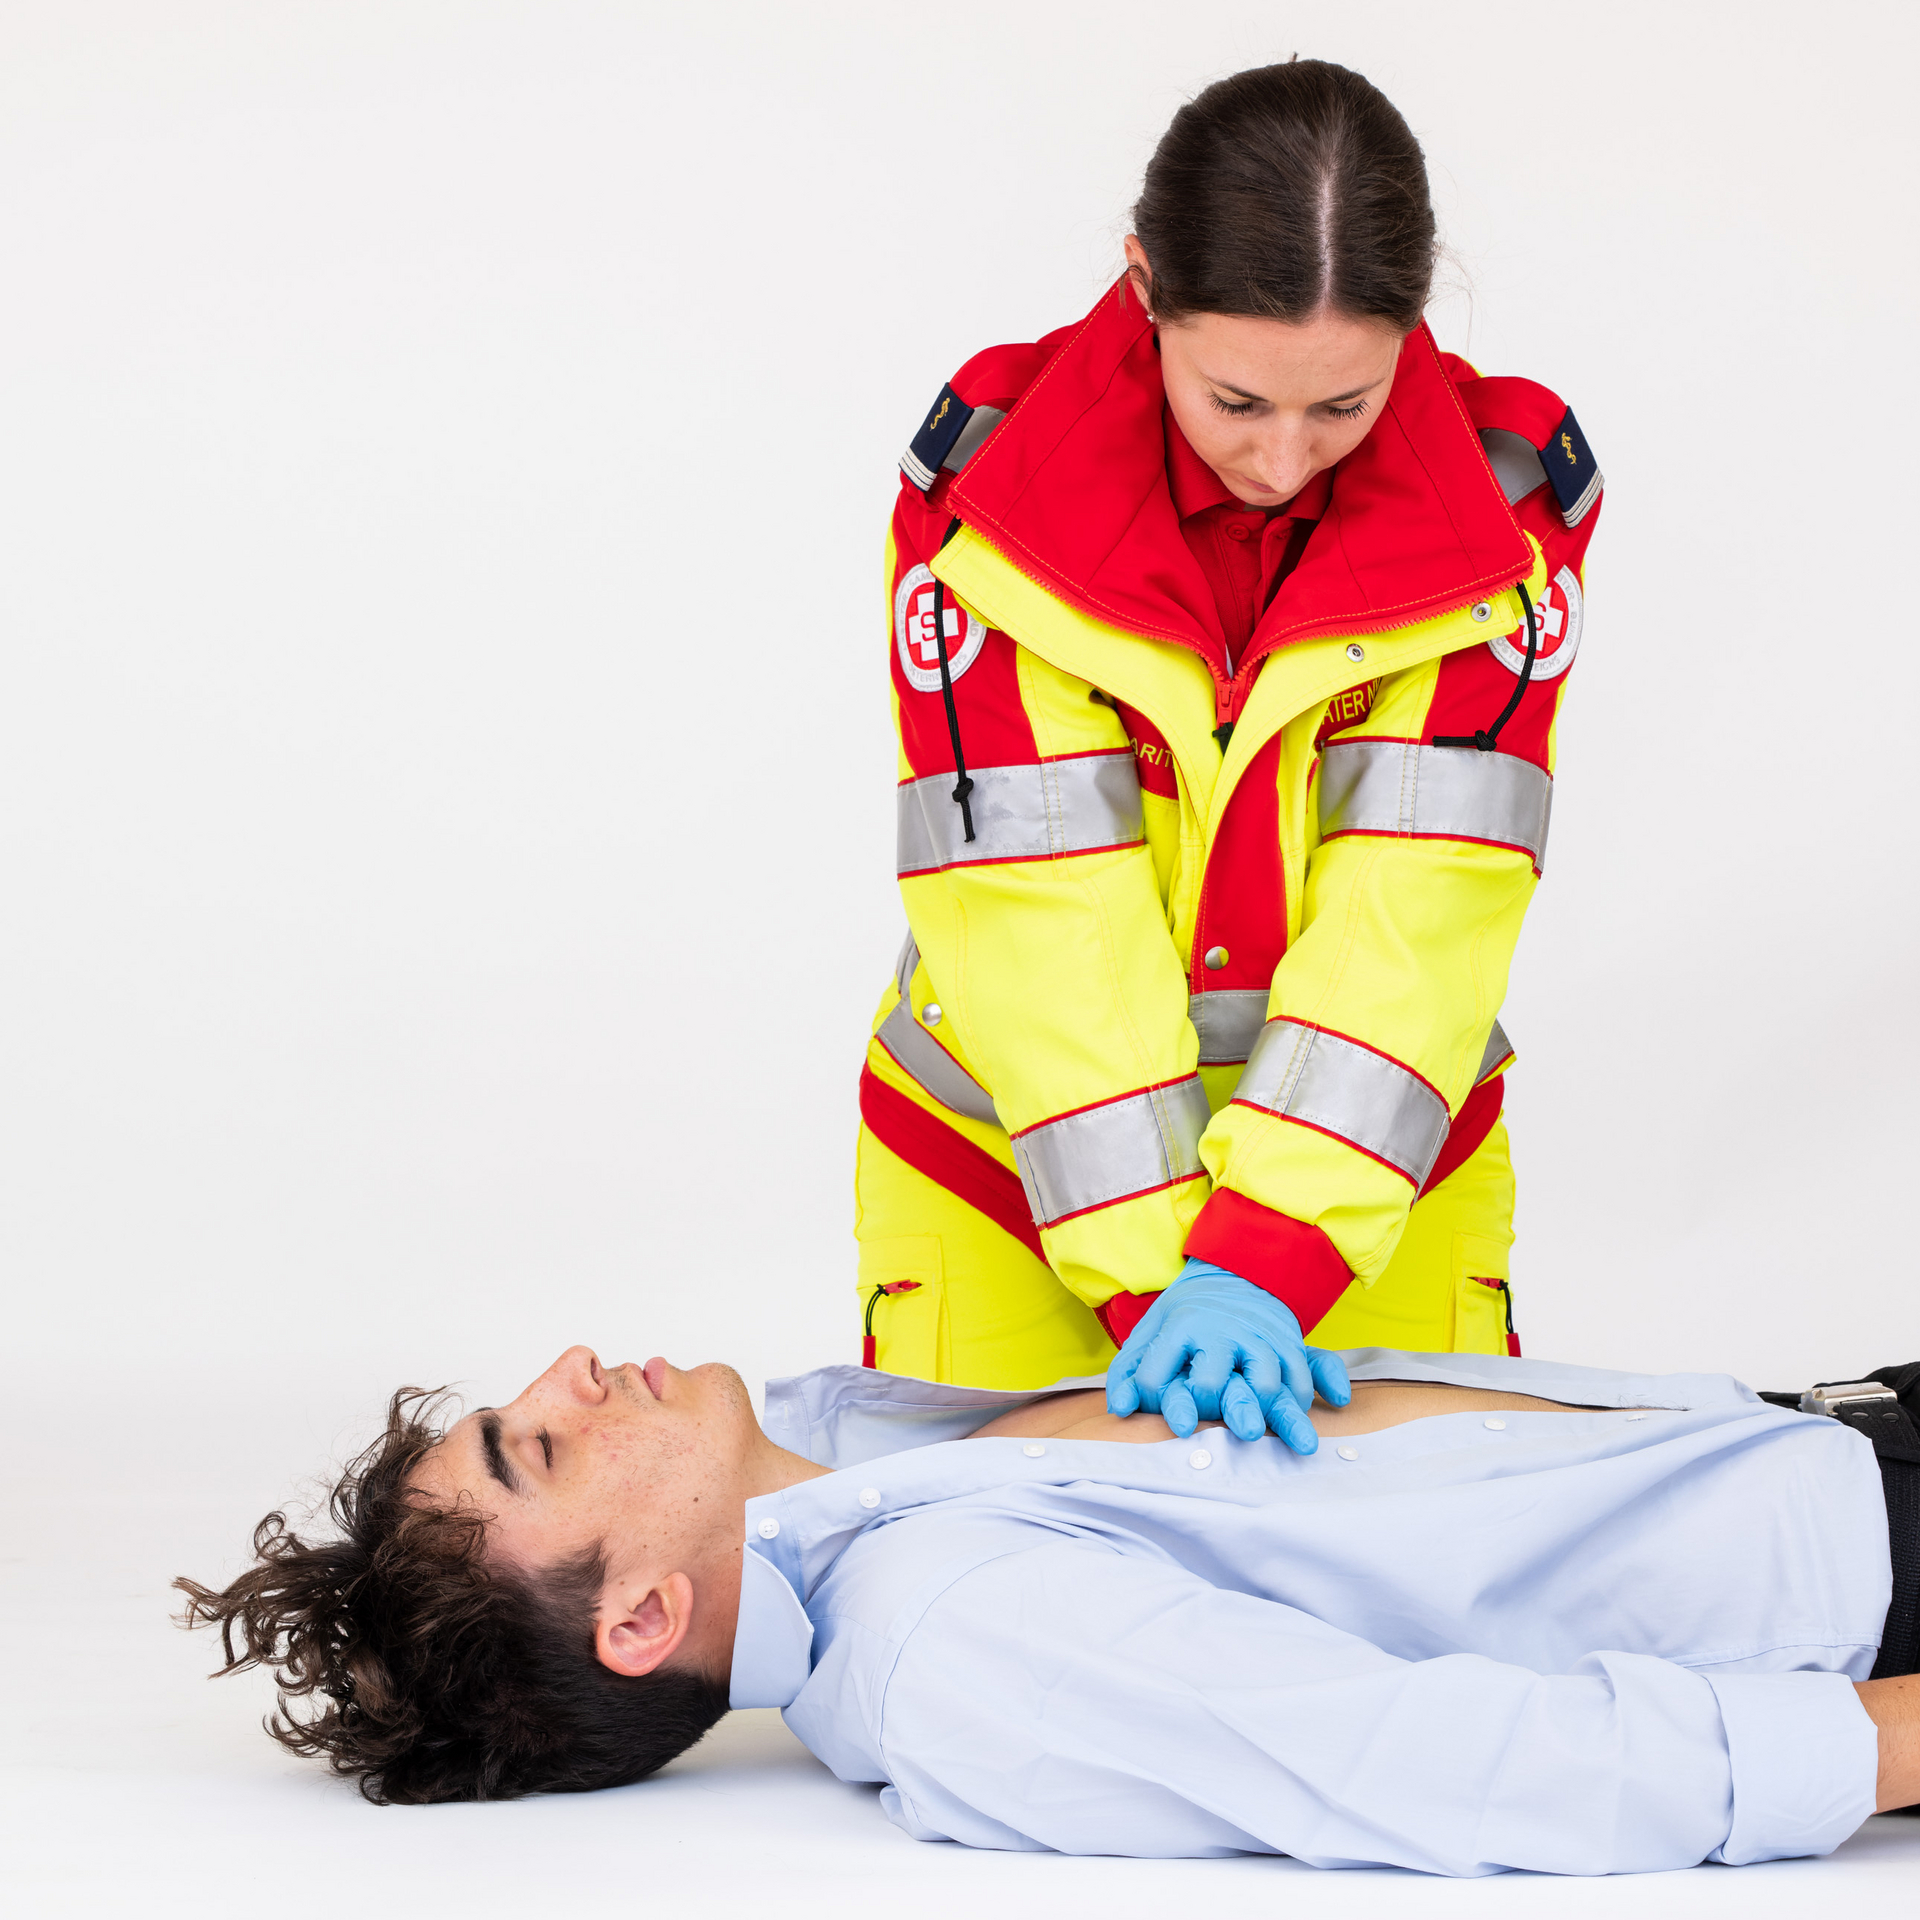 Rettungssanitäterin startet bei Patient mit Herzdruckmassage